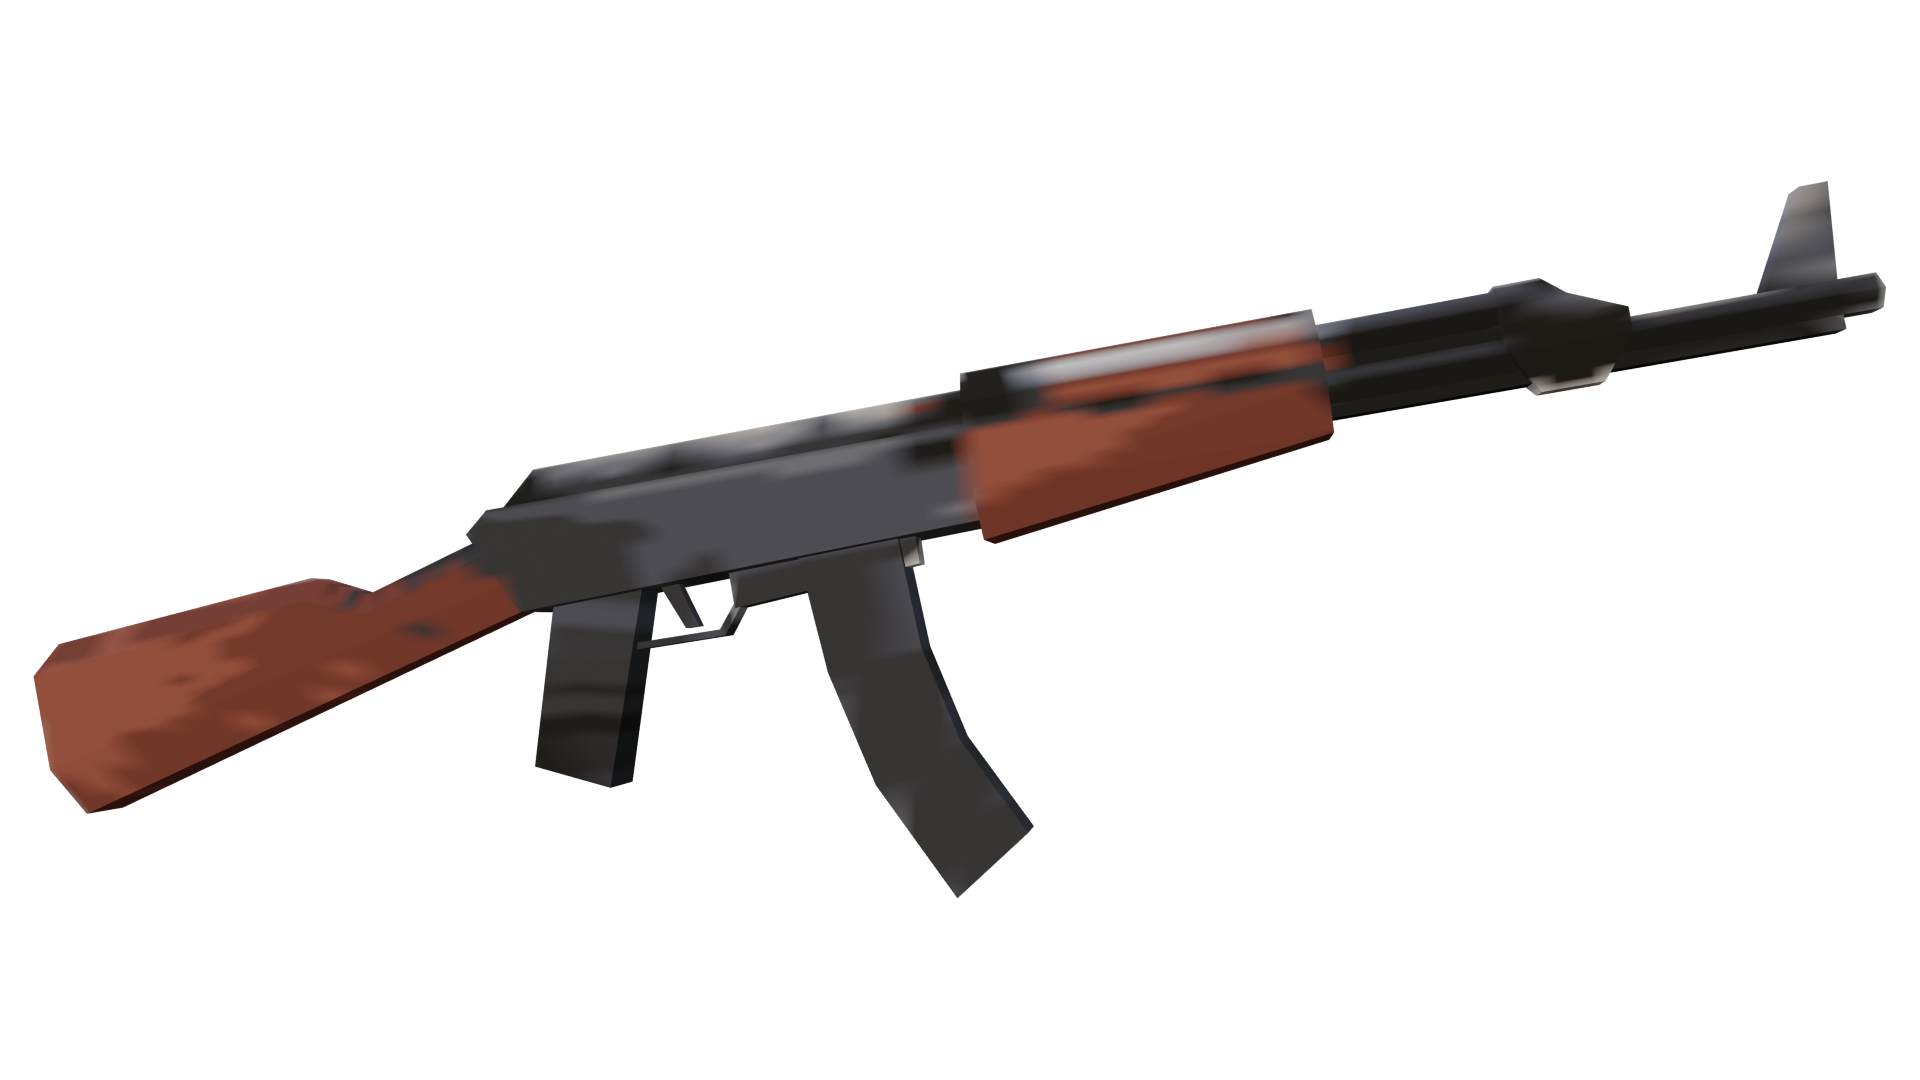 File:AK-47 assault rifle.jpg - Wikipedia